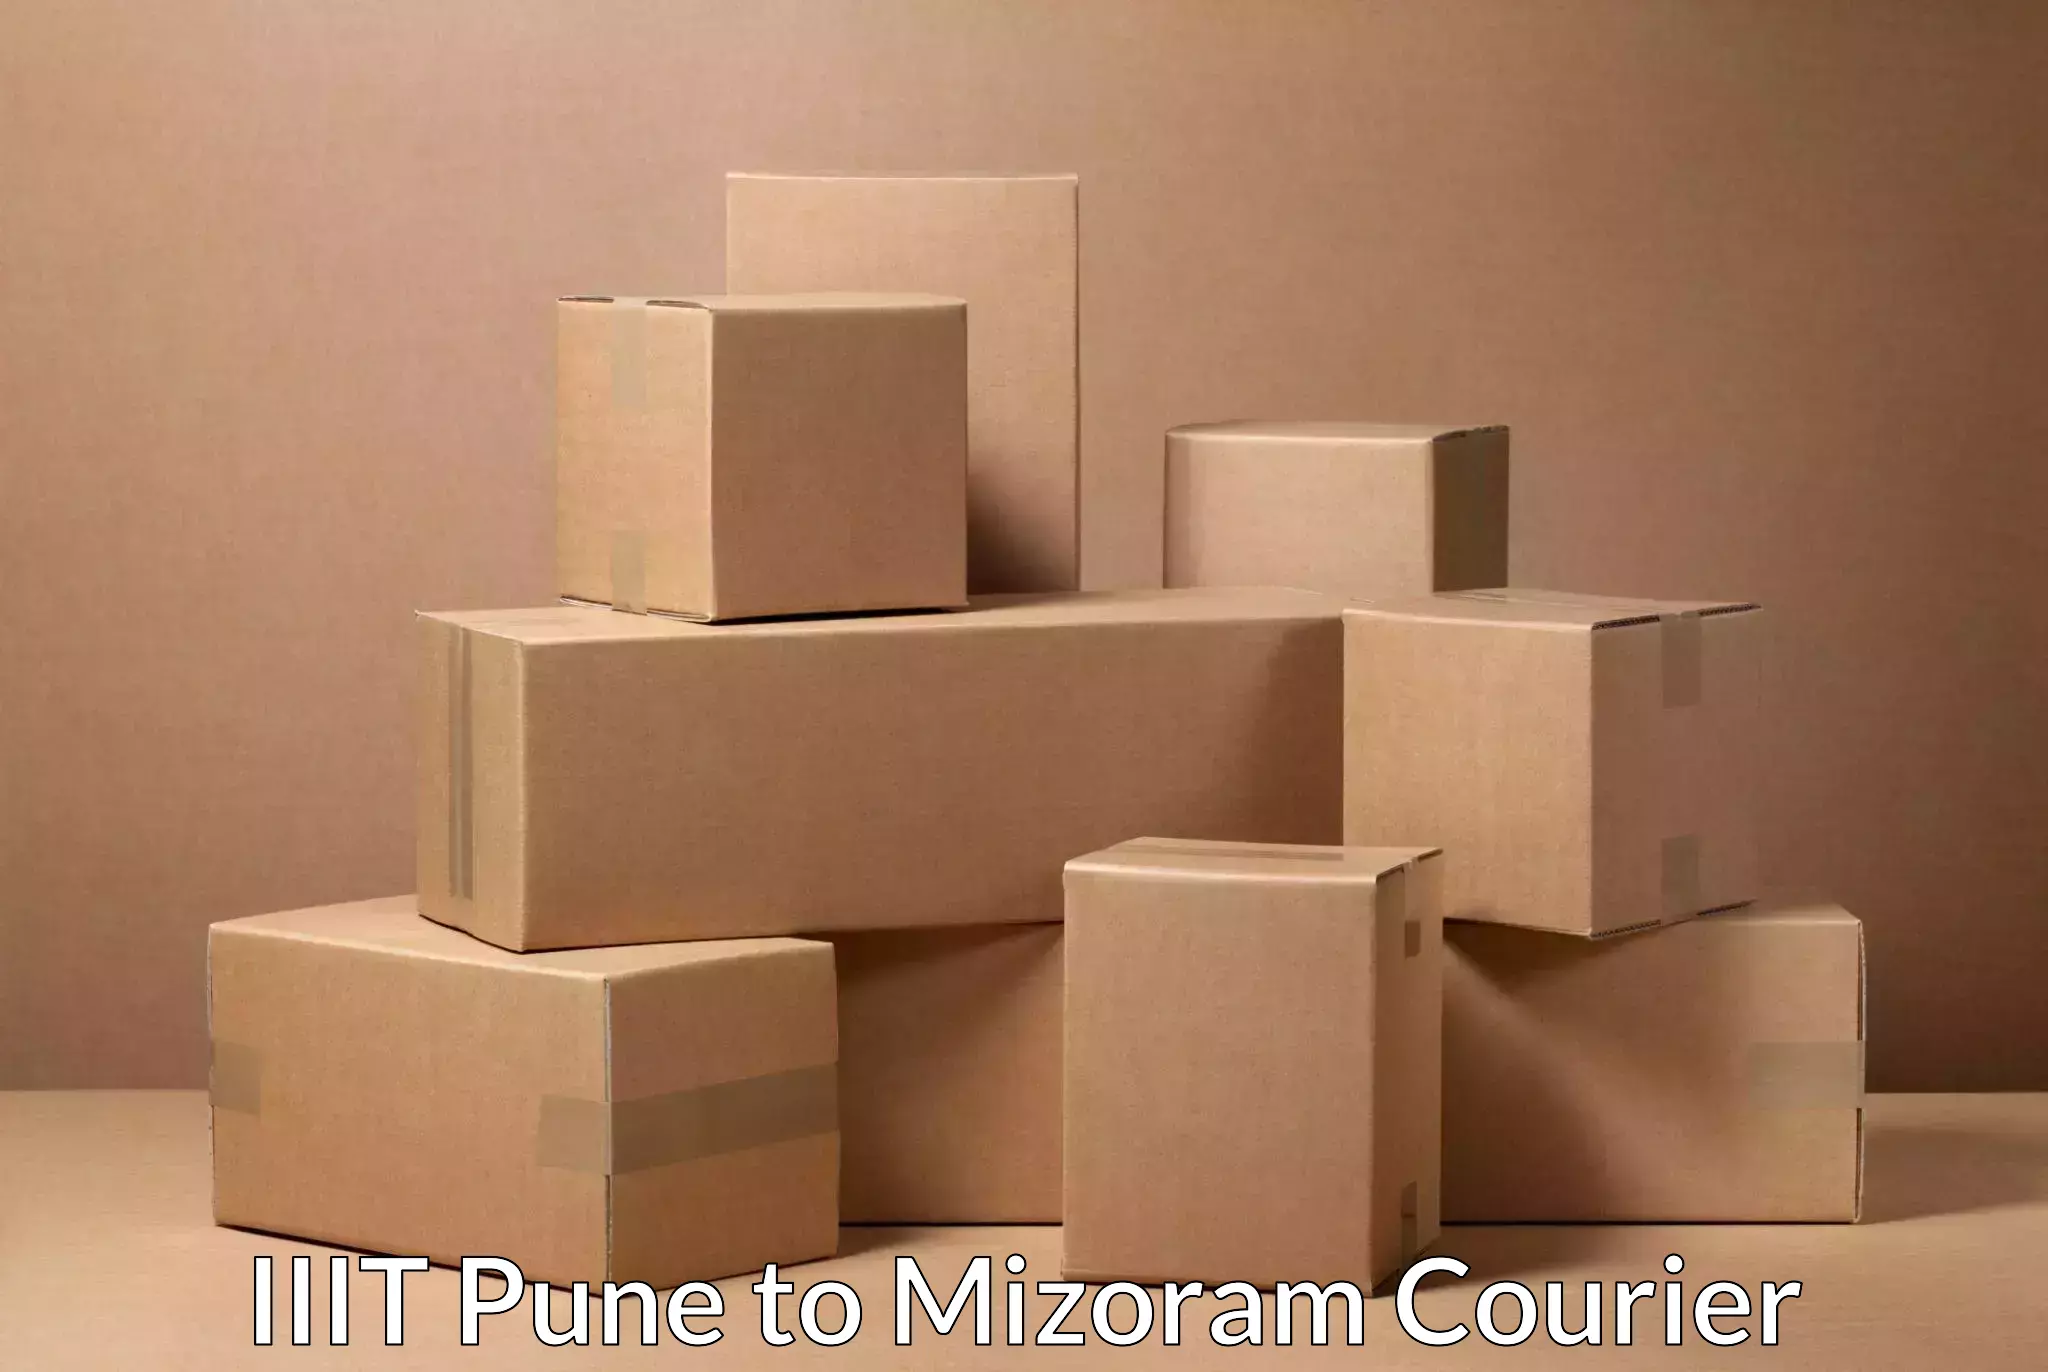 Smart logistics strategies in IIIT Pune to Mizoram